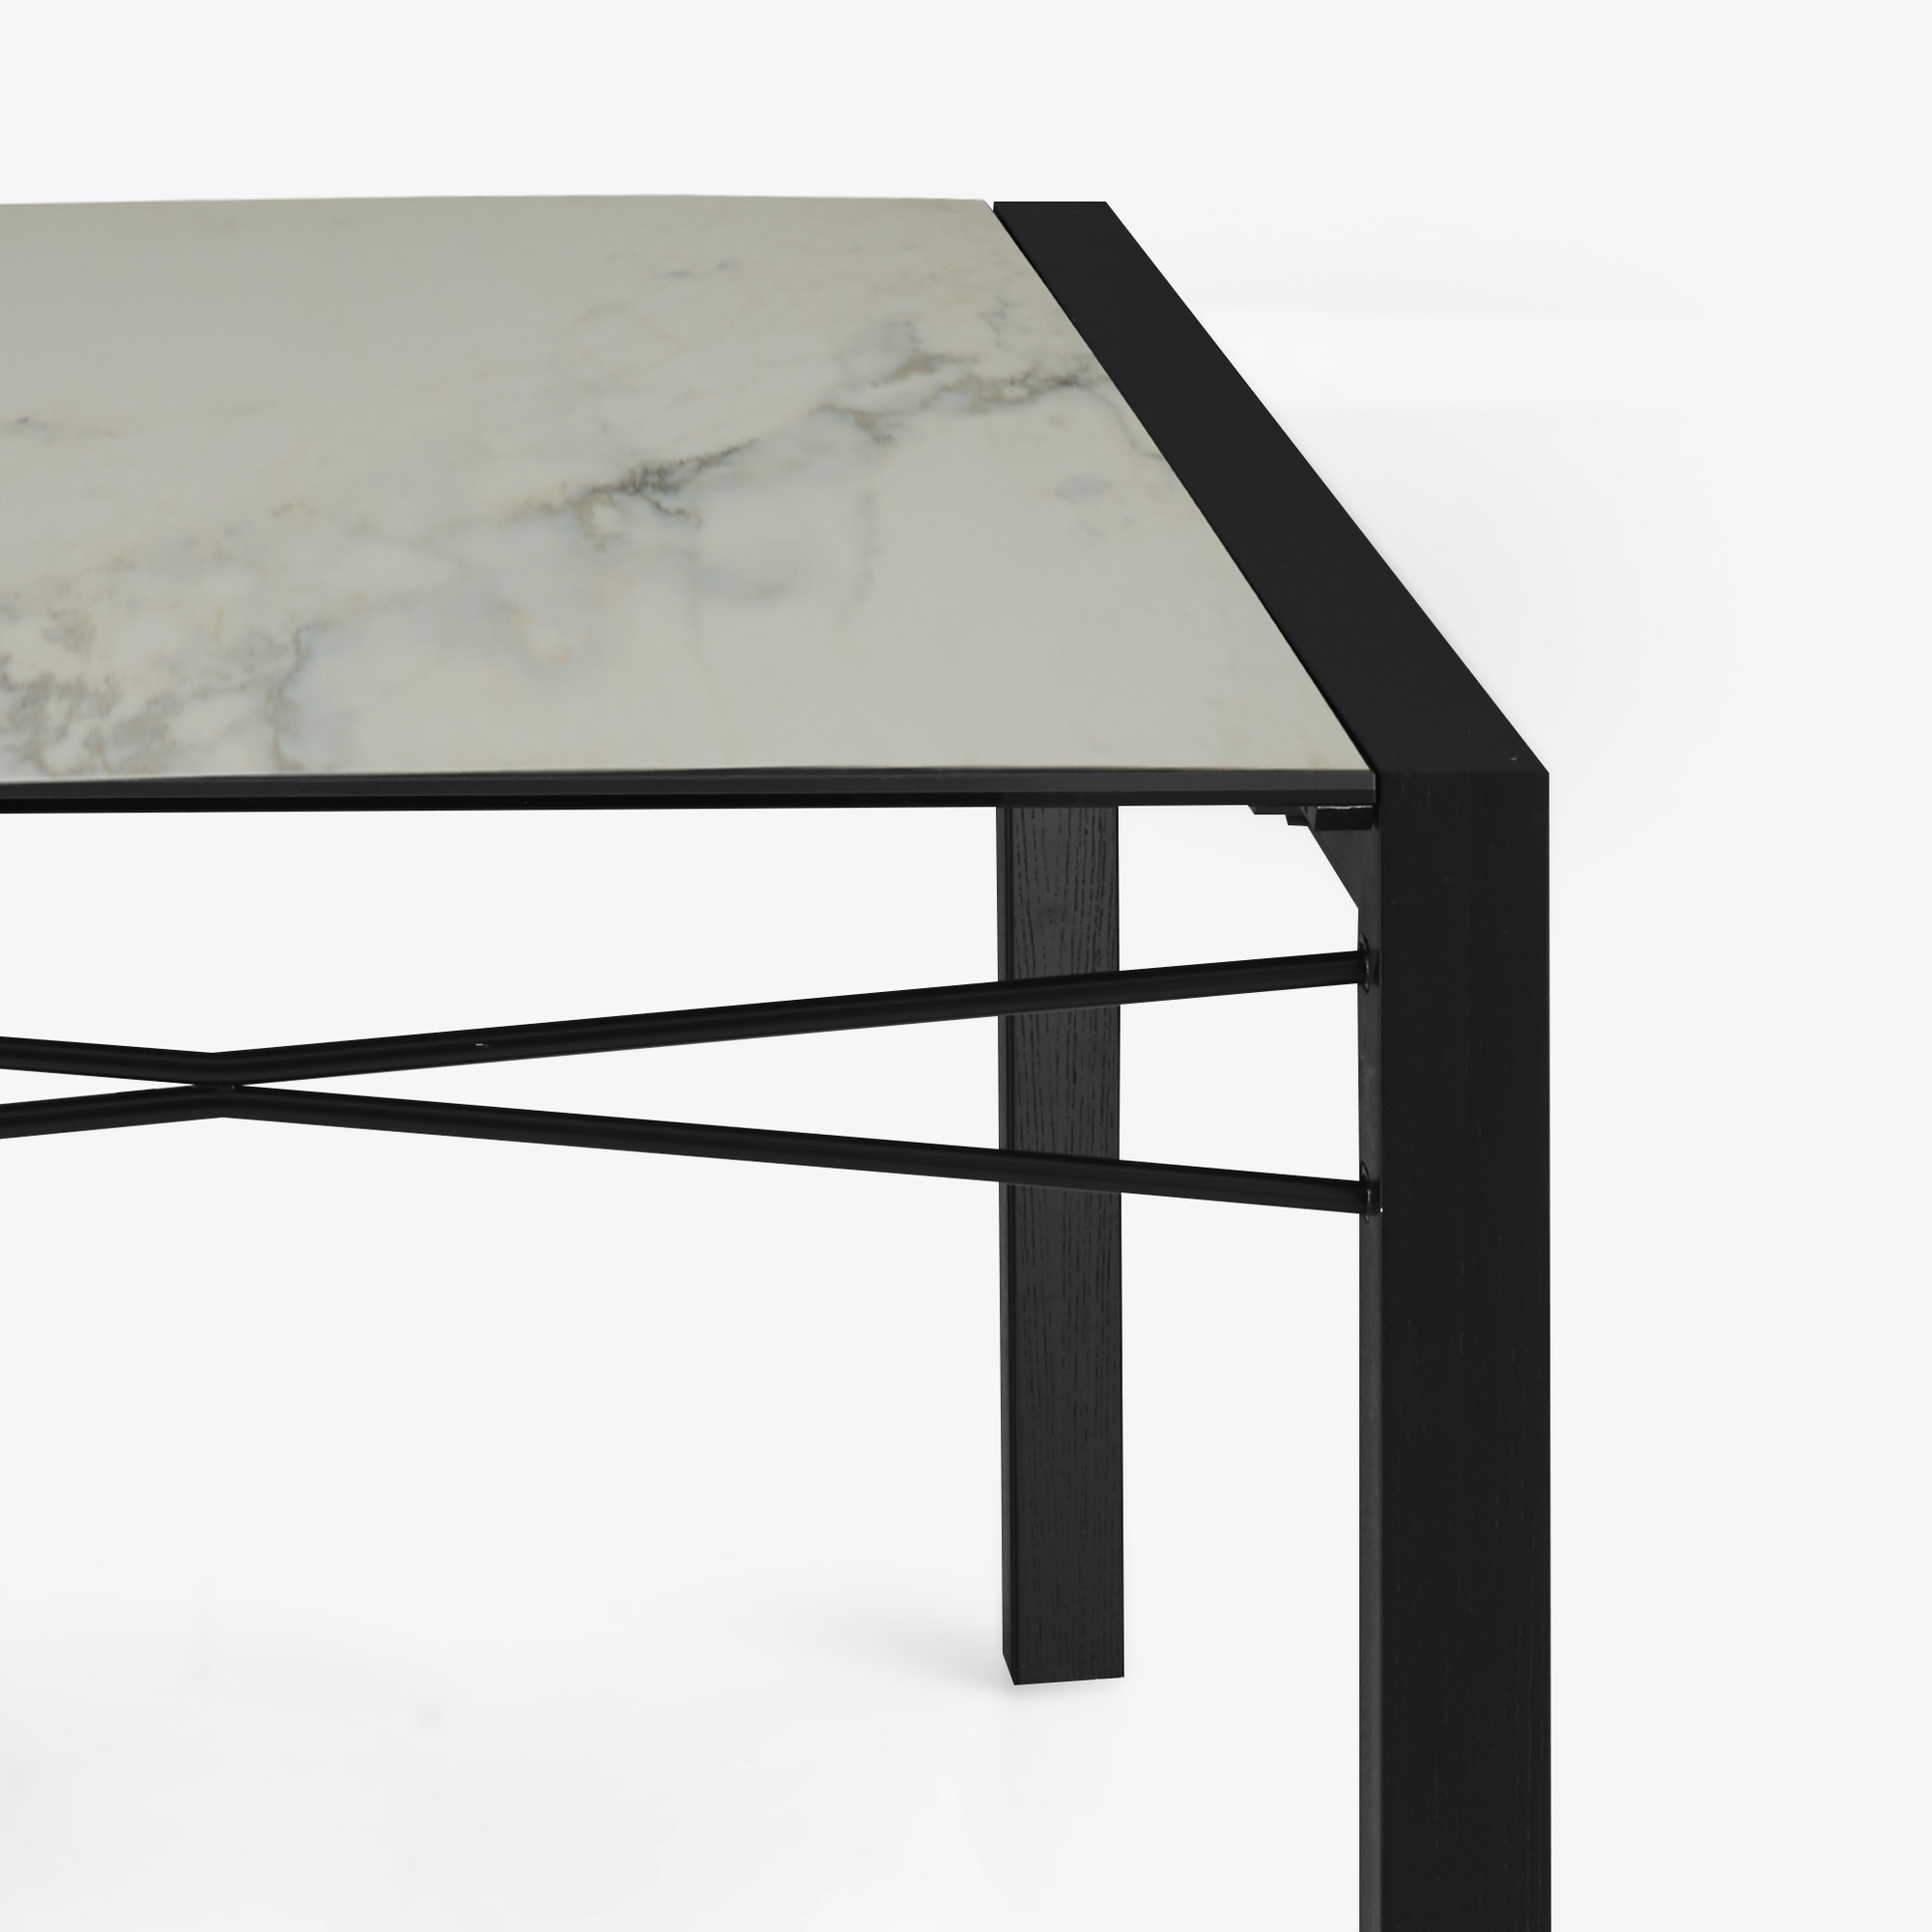 Image Mesa de comedor tablero gres cerámico aspecto mármol blanco patas de fresno teñido negro 6